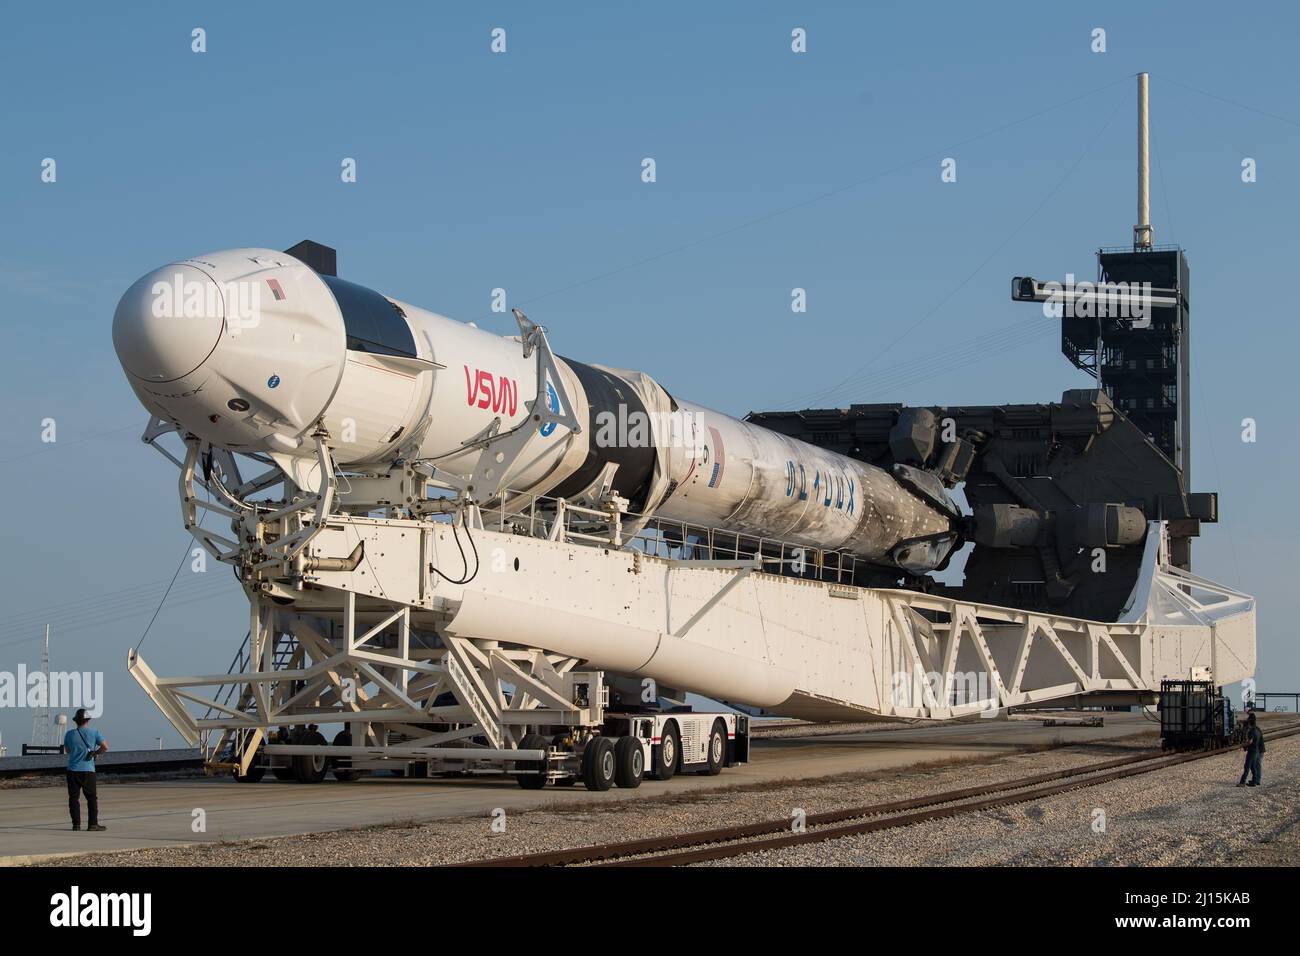 Un cohete SpaceX Falcon 9 con la nave espacial Crew Dragon de la compañía a bordo se ve como se enrolla para lanzar el Complejo 39A mientras continúan los preparativos para la misión Crew-2, el viernes 16 de abril de 2021, en el Centro Espacial Kennedy de la NASA en Florida. La misión SpaceX Crew-2 de la NASA es la segunda misión de rotación de la tripulación de la nave espacial SpaceX Crew Dragon y del cohete Falcon 9 a la Estación Espacial Internacional como parte del Programa de Crew Comercial de la agencia. Los astronautas de la NASA Shane Kimbrough y Megan McArthur, el astronauta de la ESA (Agencia Espacial Europea) Thomas Pesquet y el astro de la Agencia Japonesa de Exploración Aeroespacial (JAXA) Foto de stock